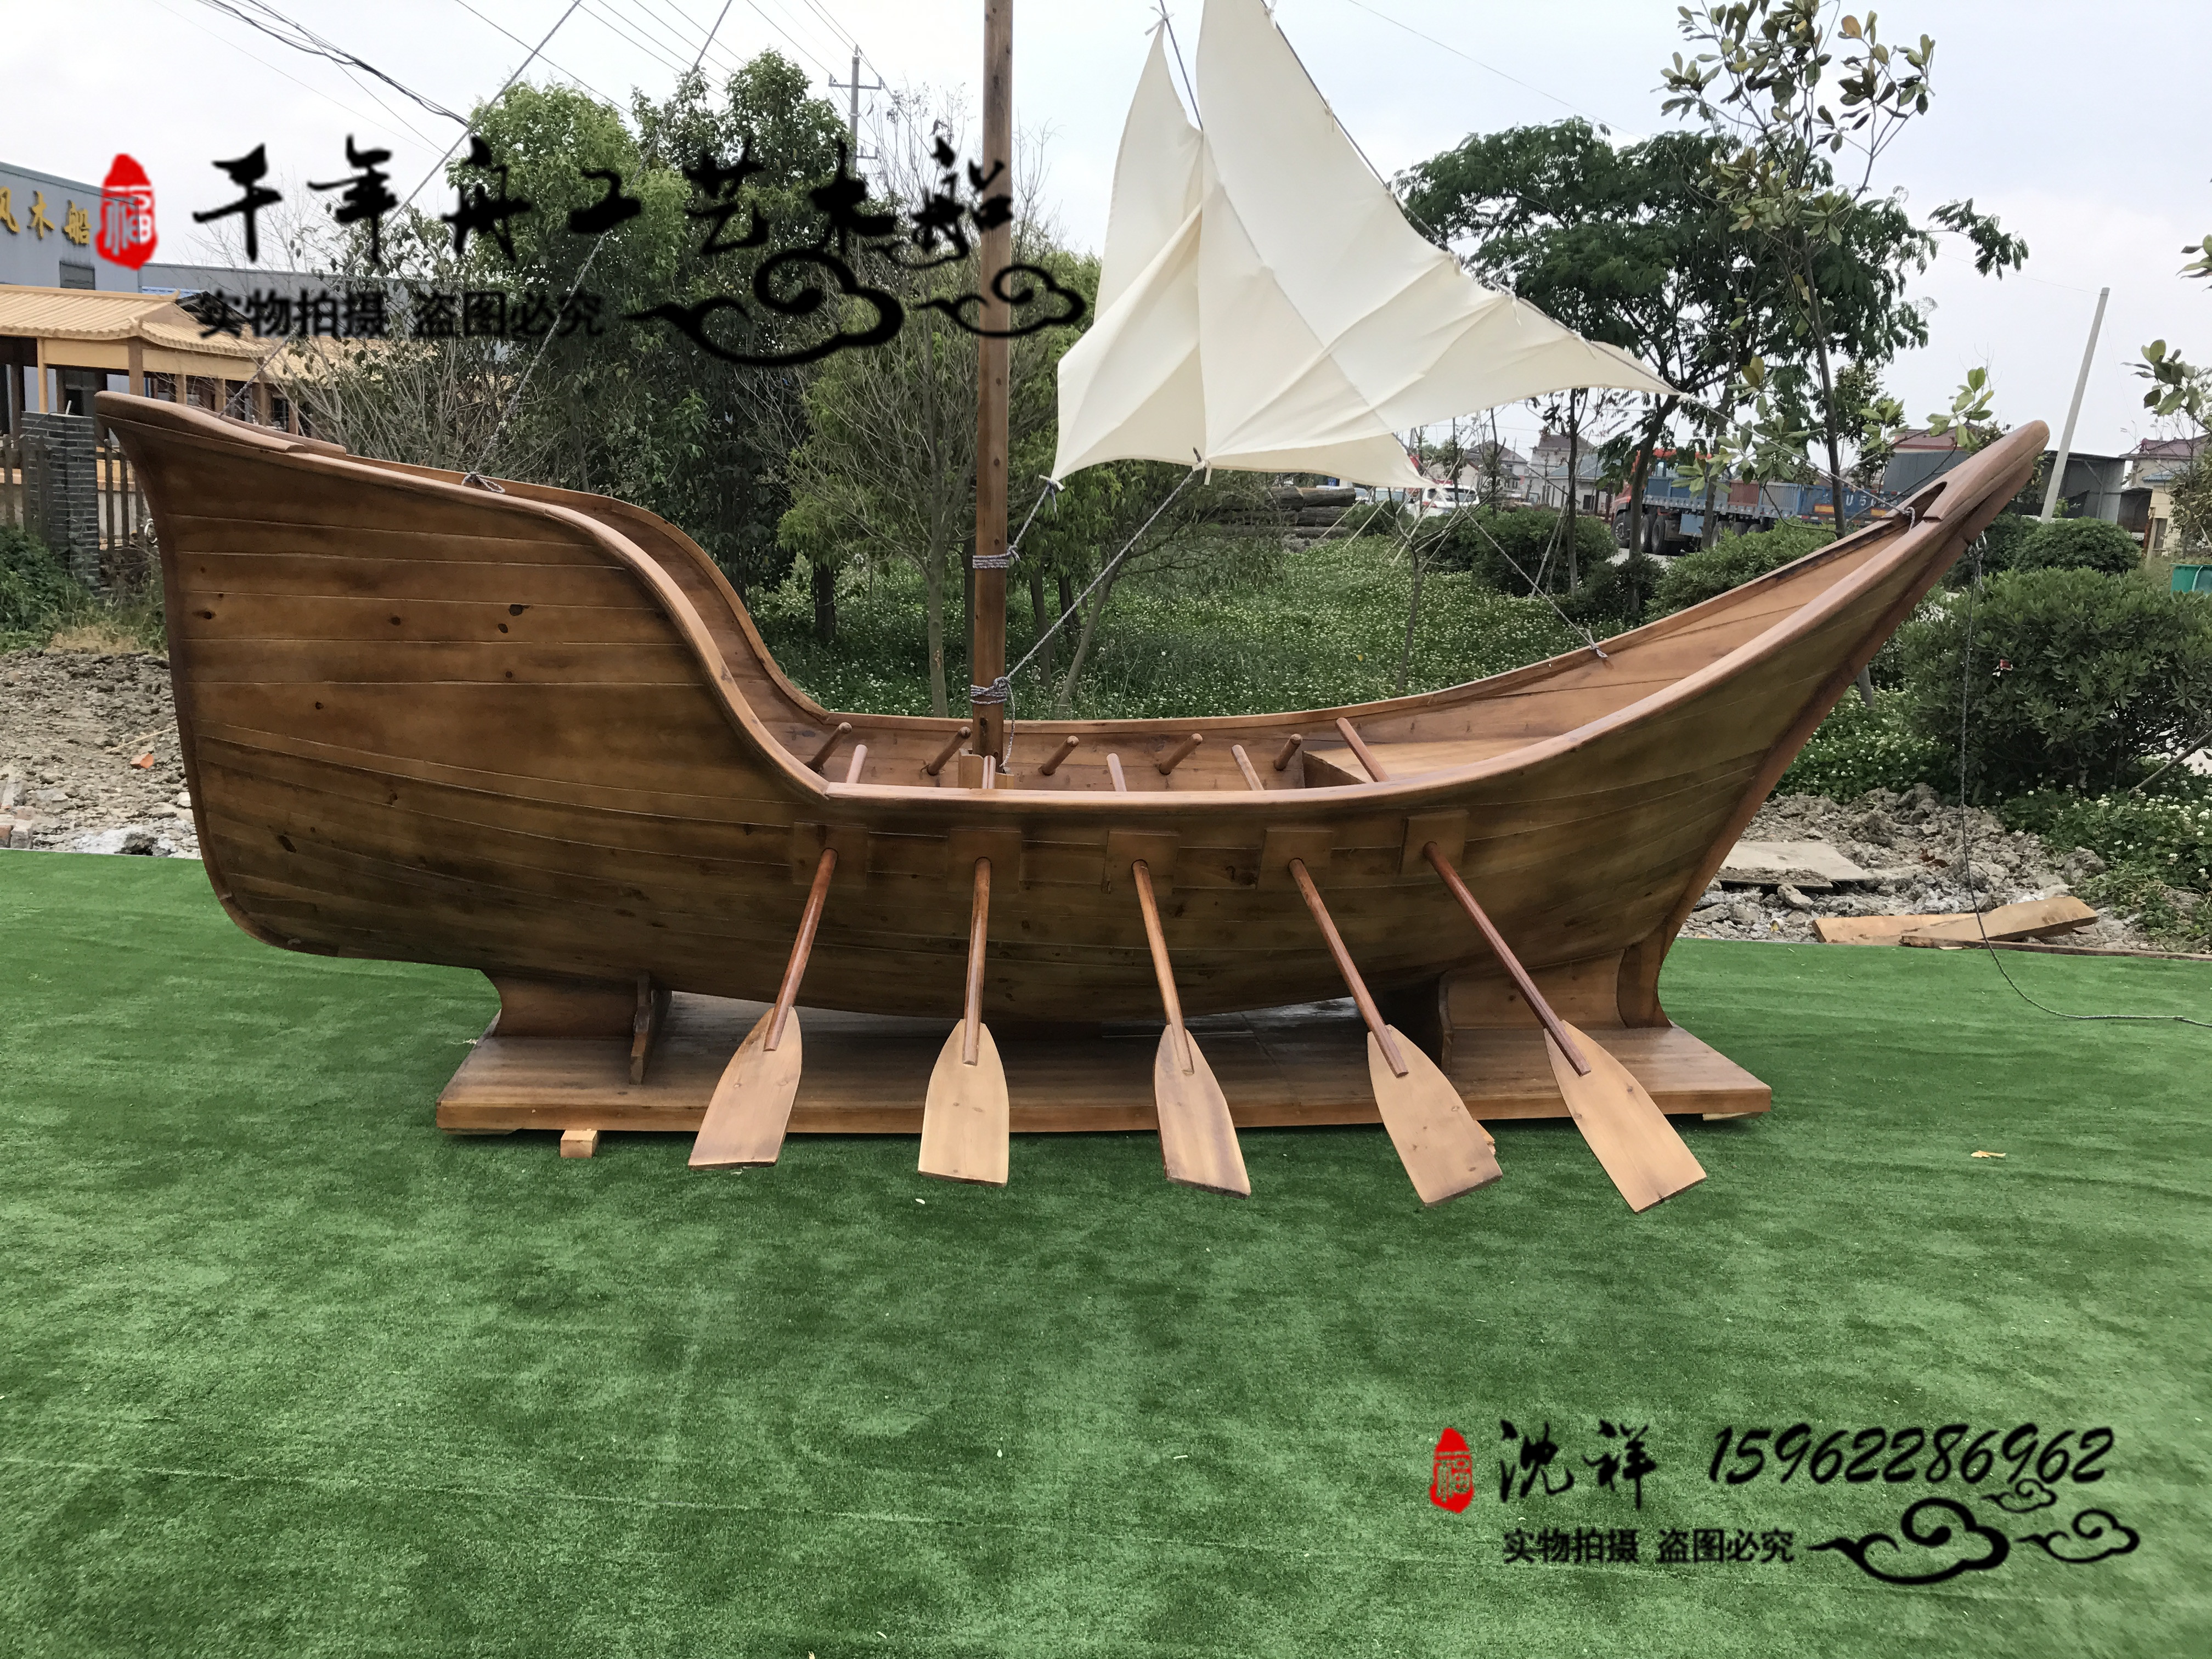 海盗船欧式木船景观木船厂家直销酒店餐饮木船景观装饰船